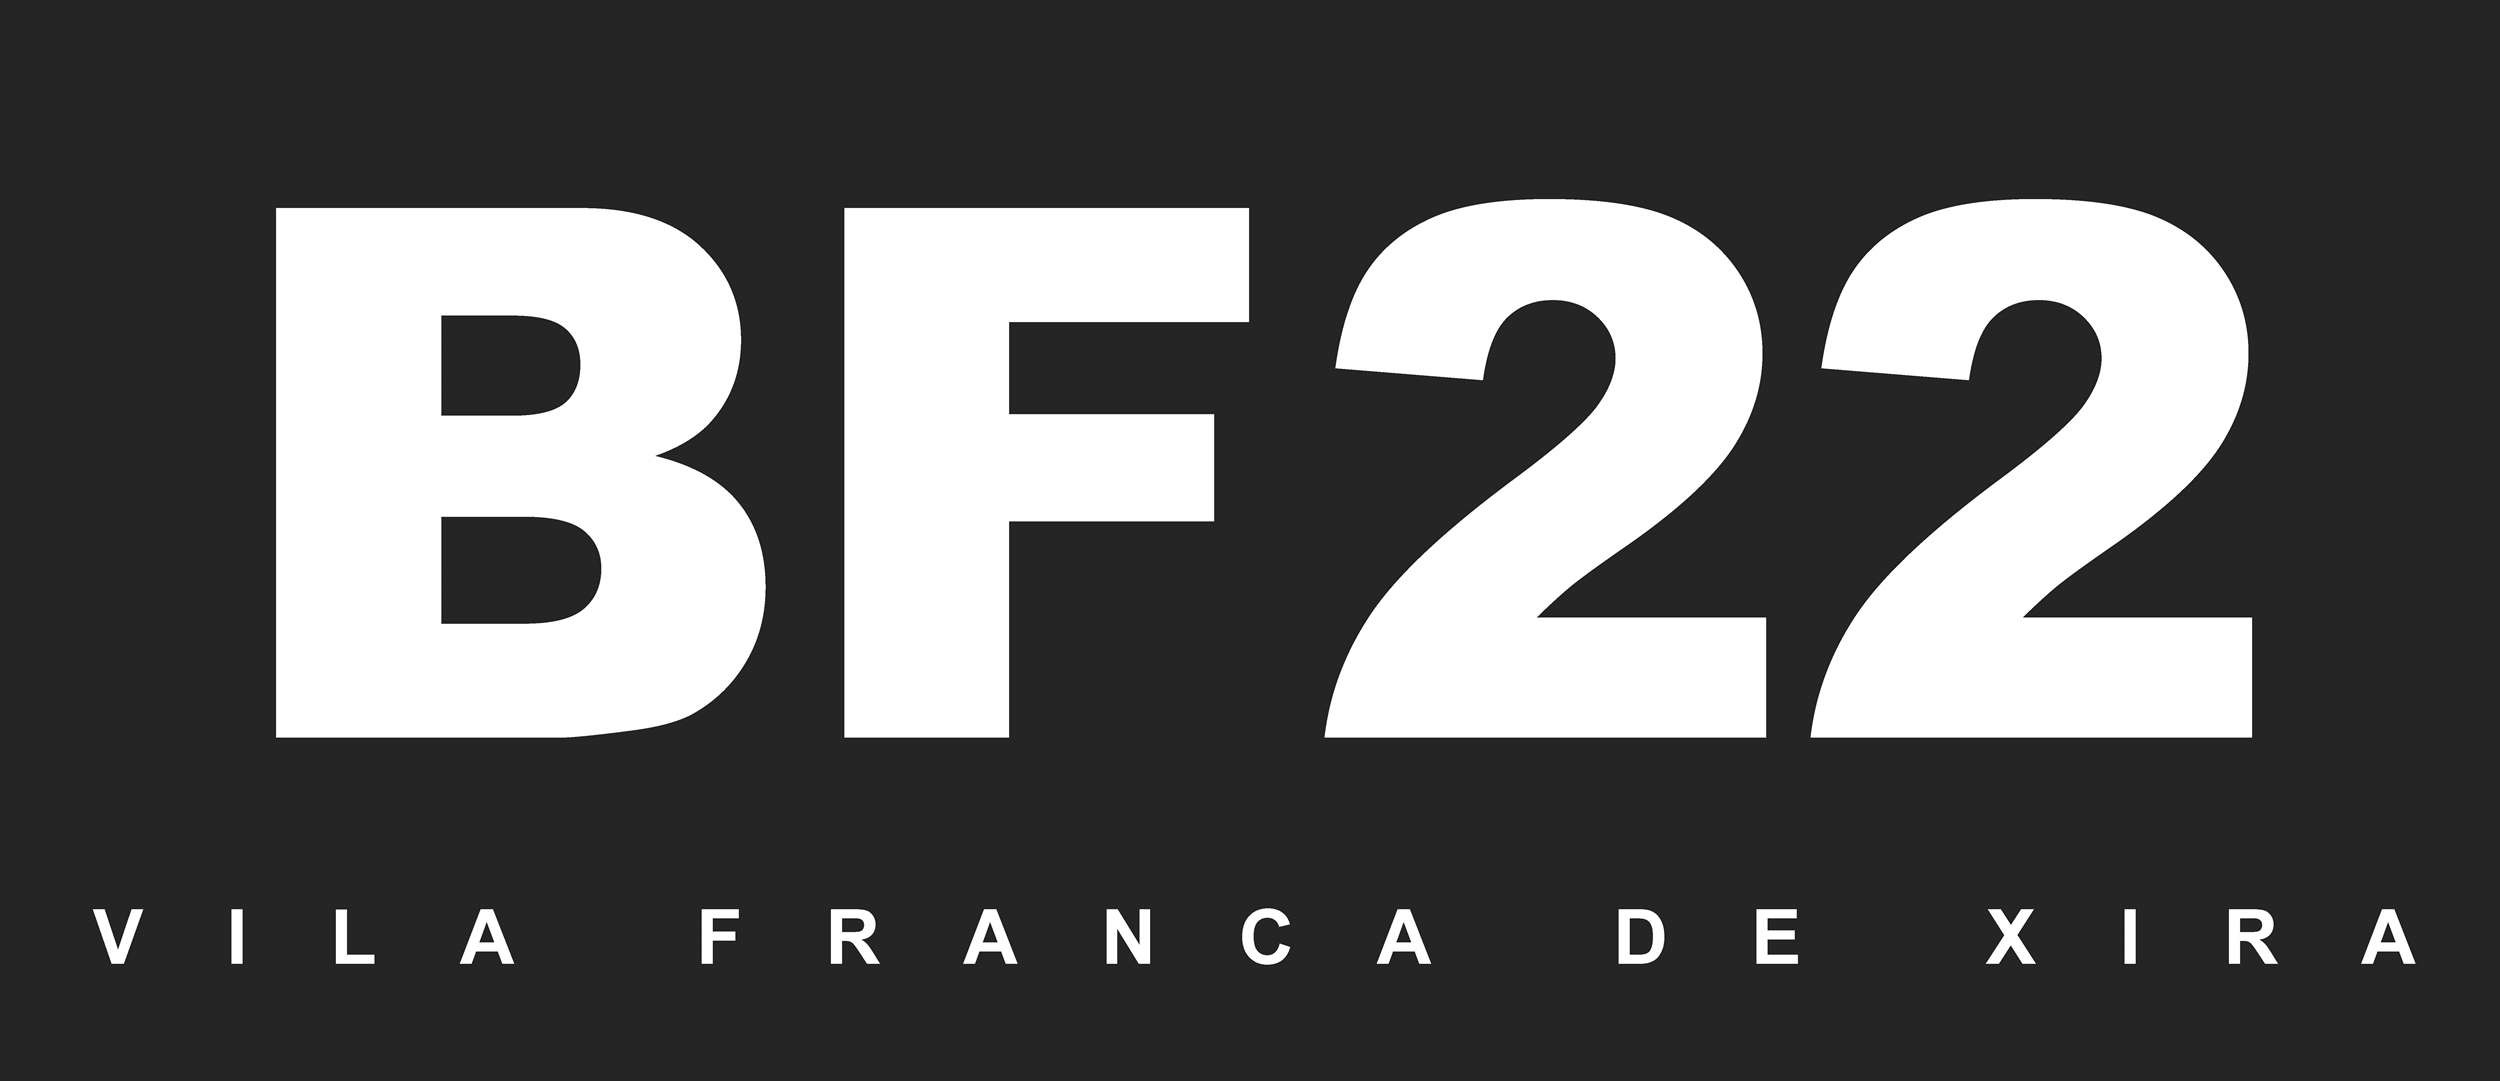 BF22 - Bienal de Fotografia: candidaturas até 6 de maio